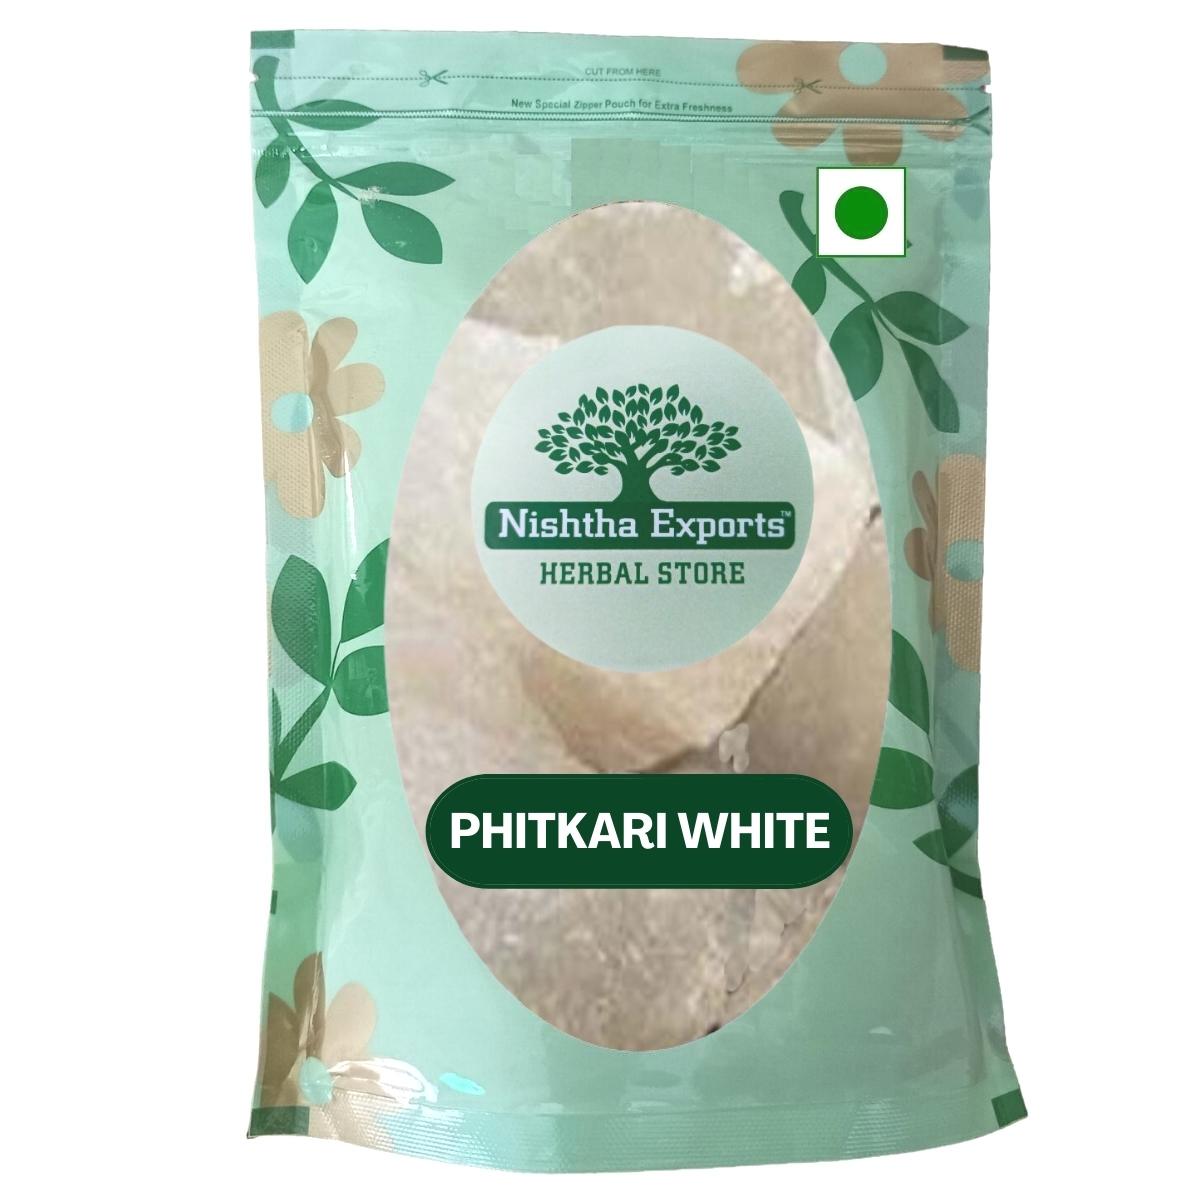 Phitkari White - Fitkari Safed - Potash Alum - fitkari - safed - raw - herbs